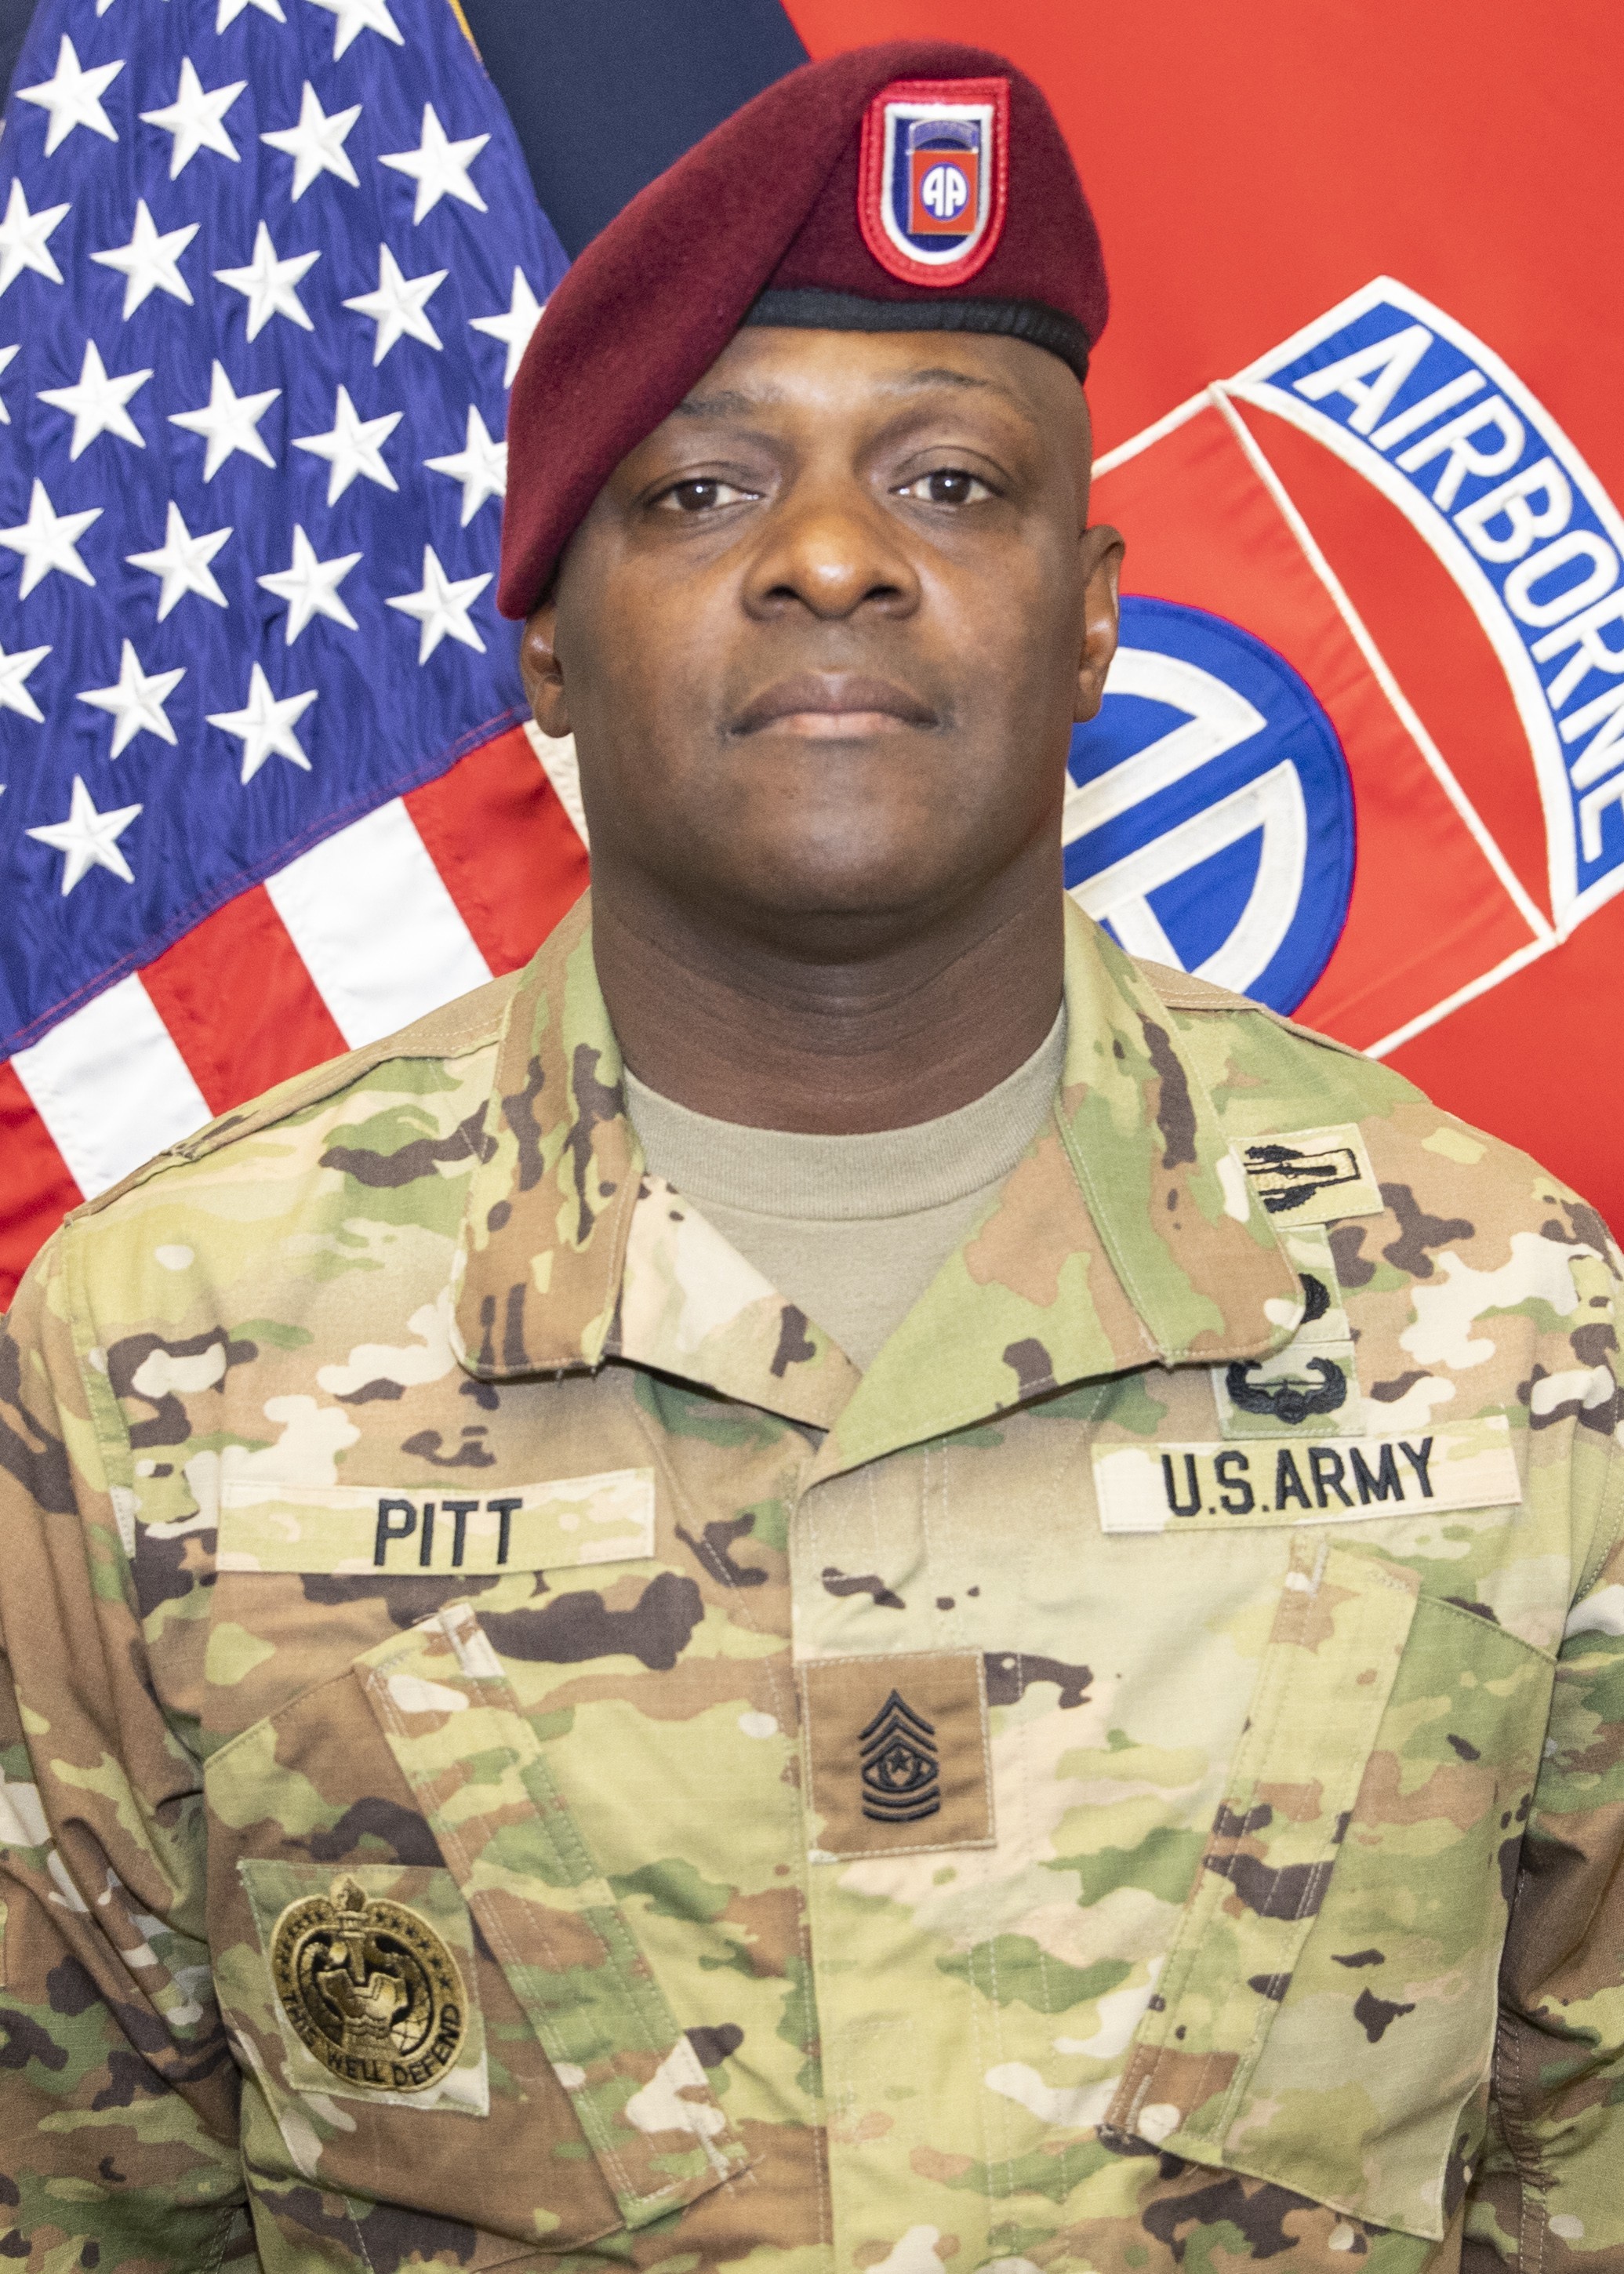 Command Sgt. Maj. David R. Pitt